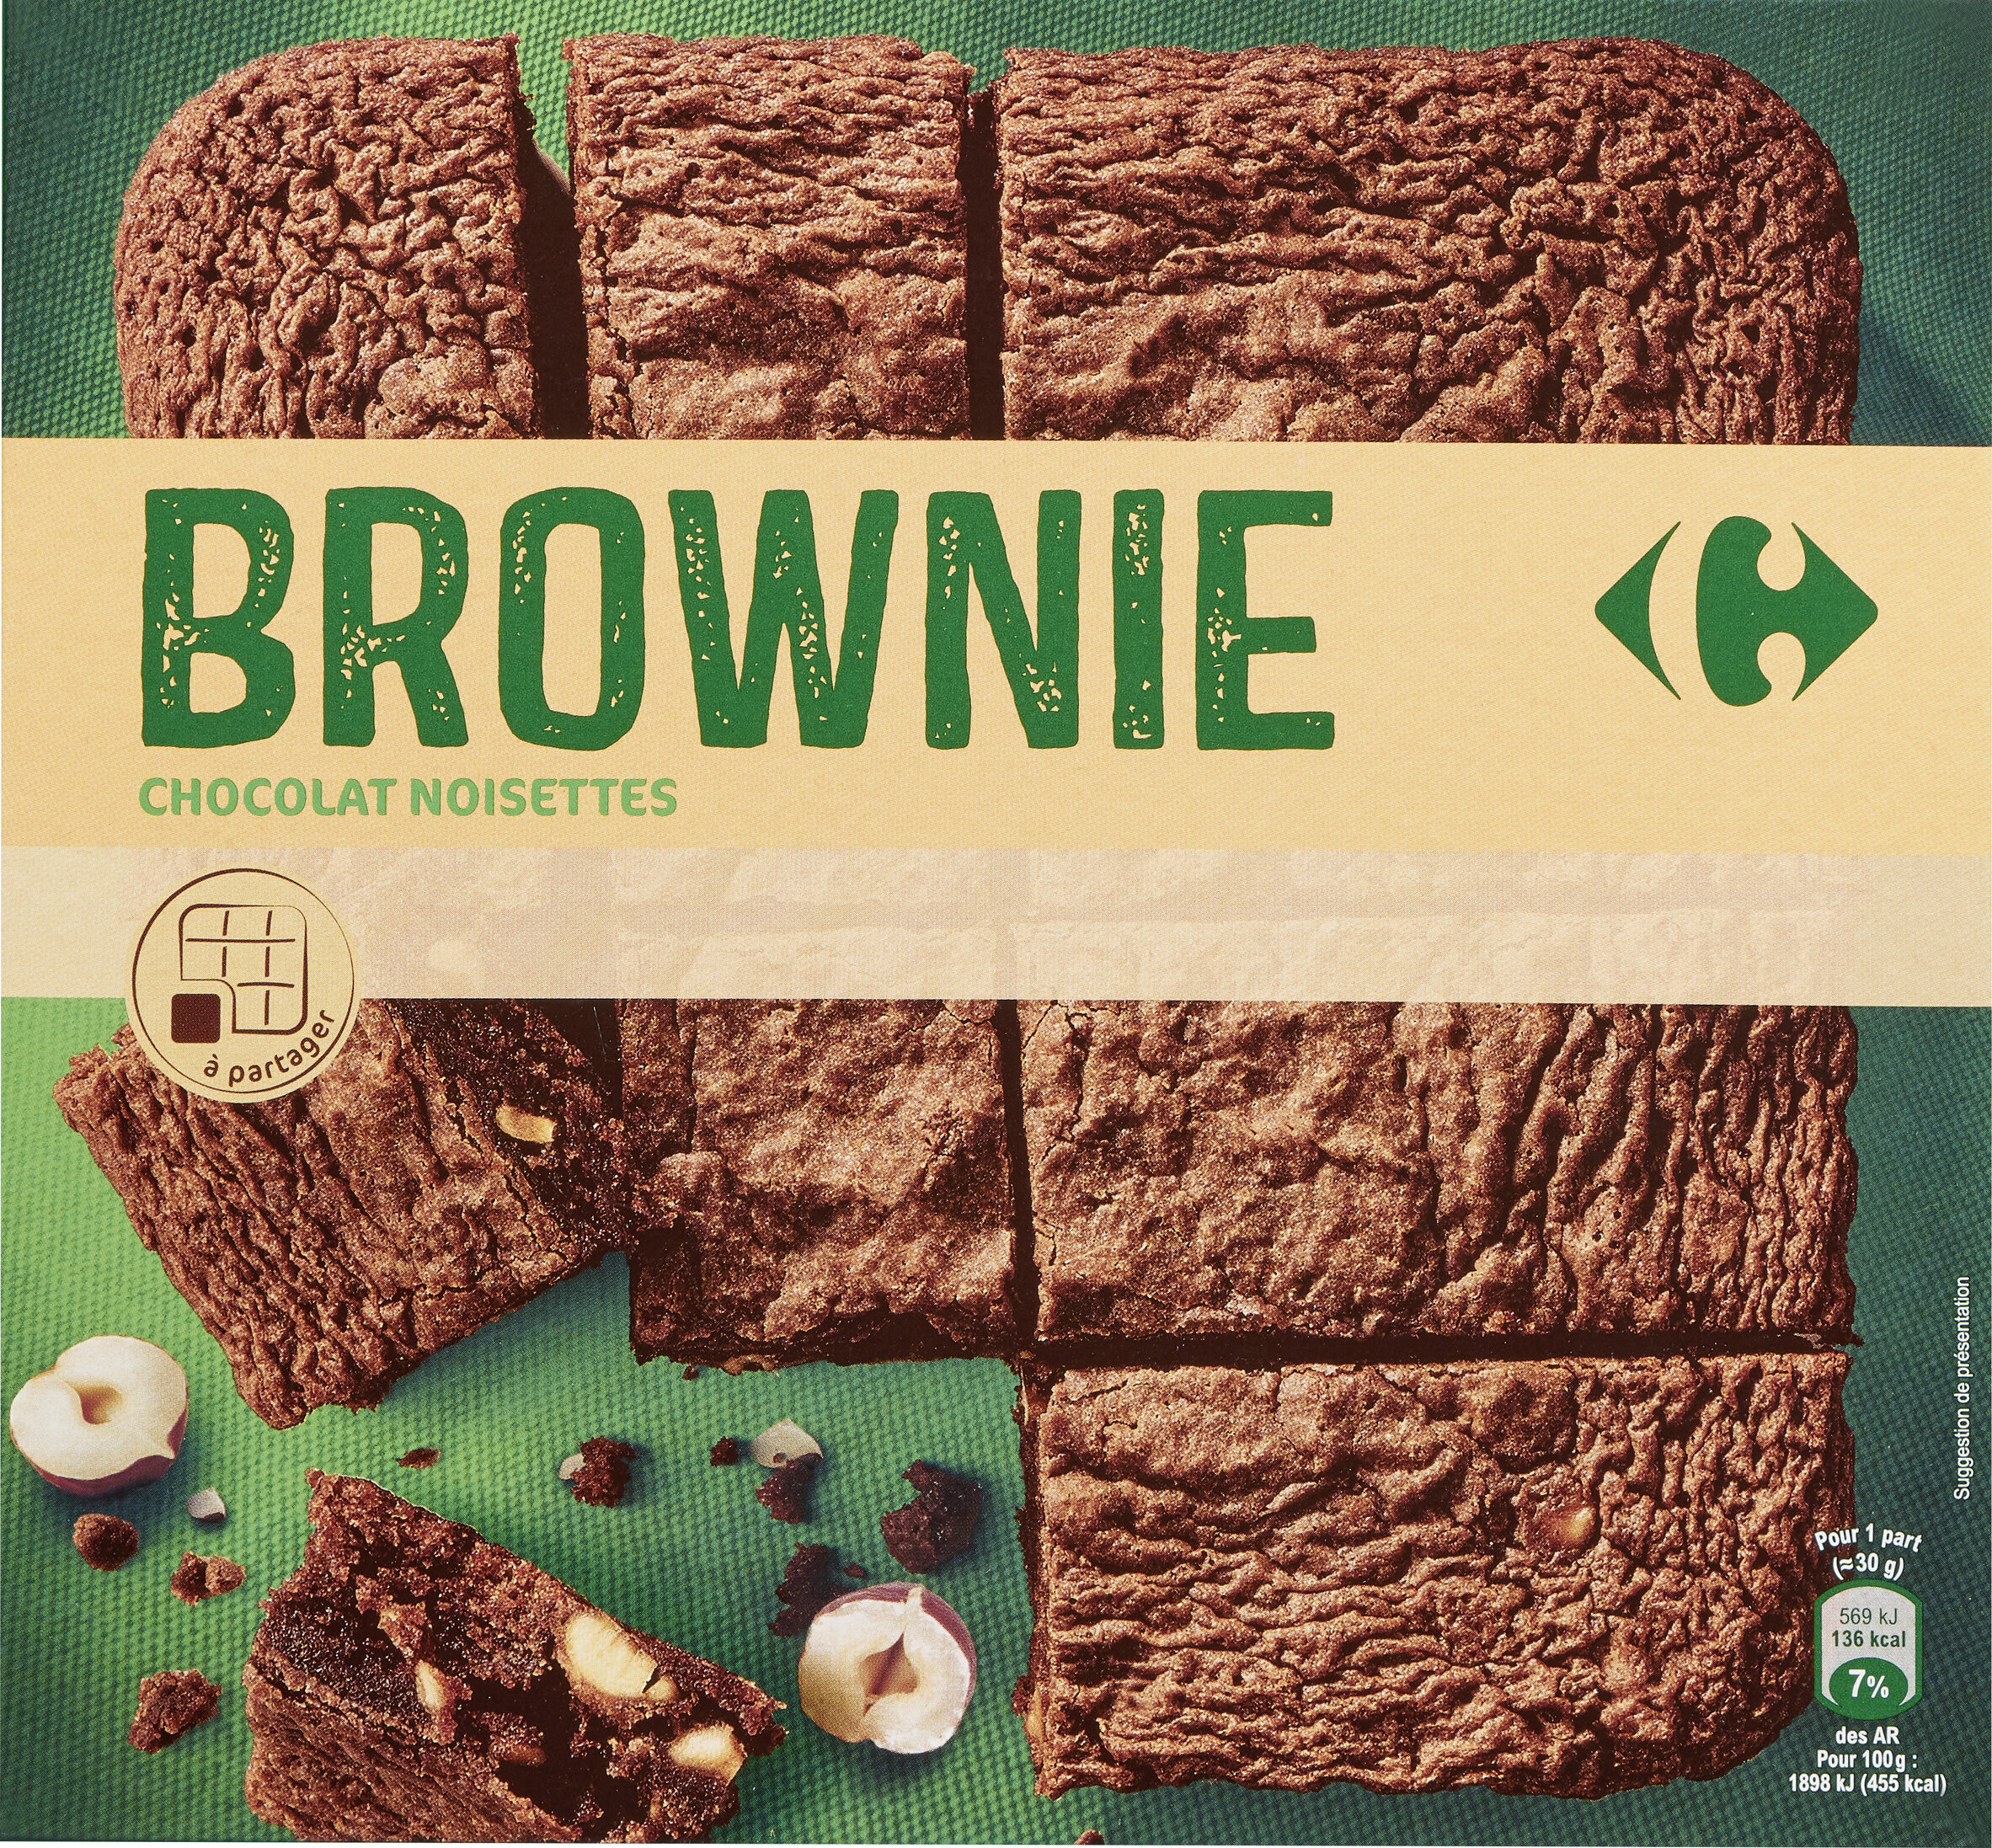 Brownie chocolat et noisettes - Product - fr